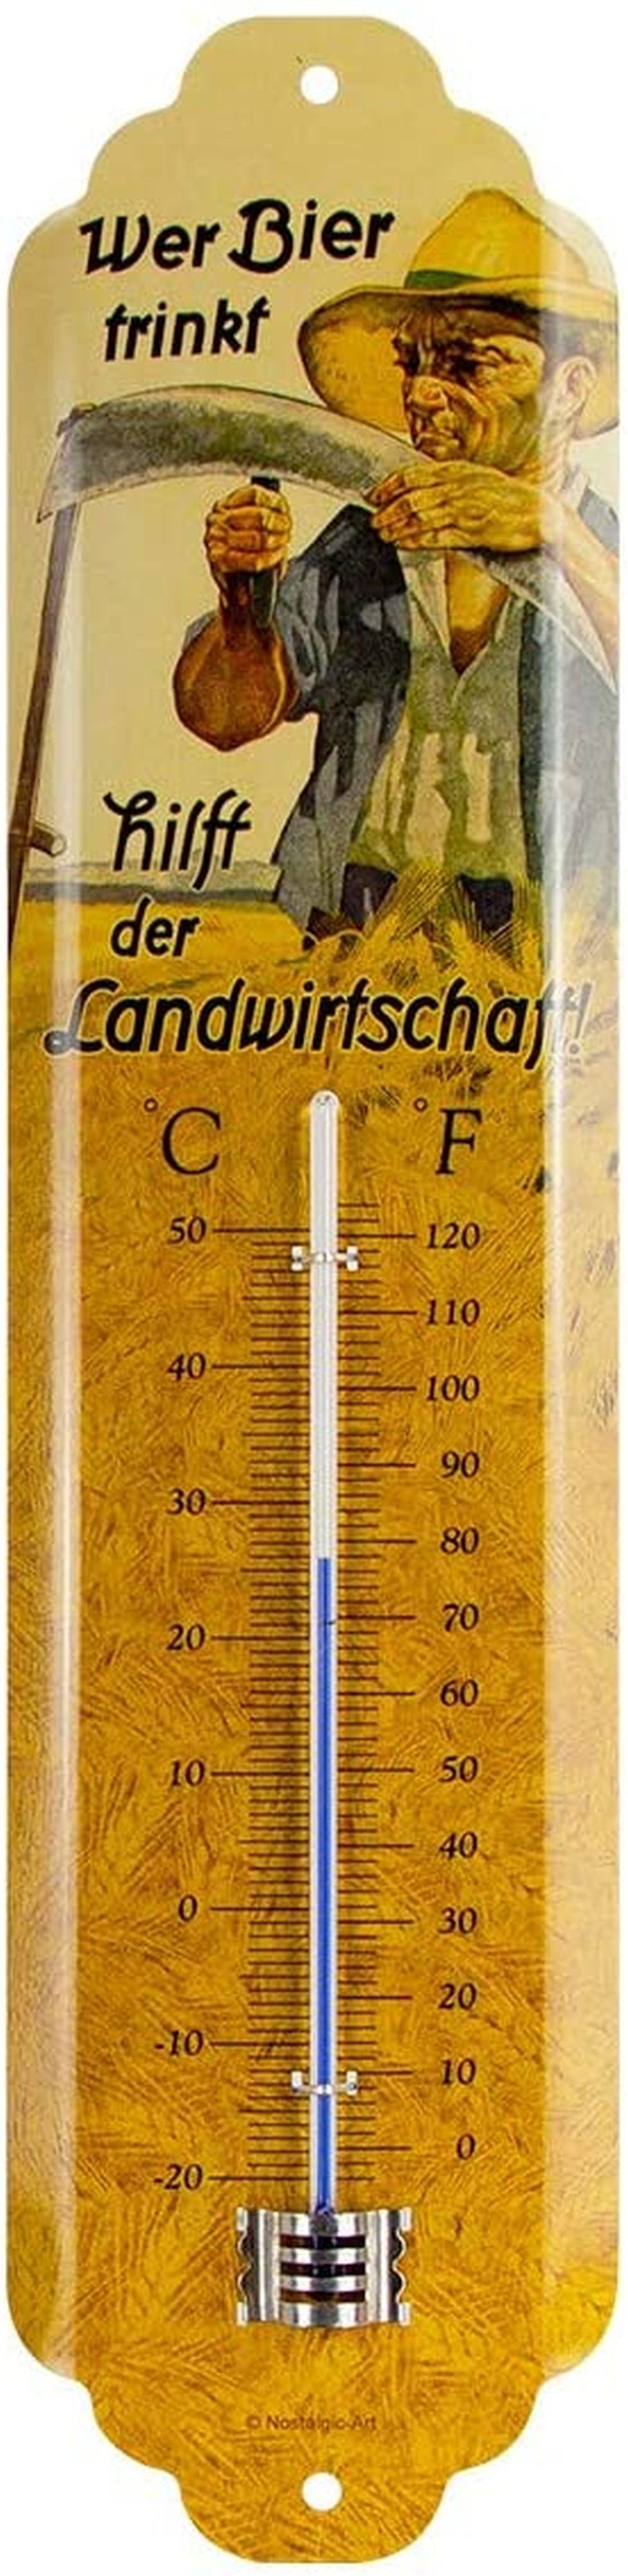 Nostalgic-Art Raumthermometer Retro Metall-Thermometer Innen Aussen Analog  - Wer Bier trinkt